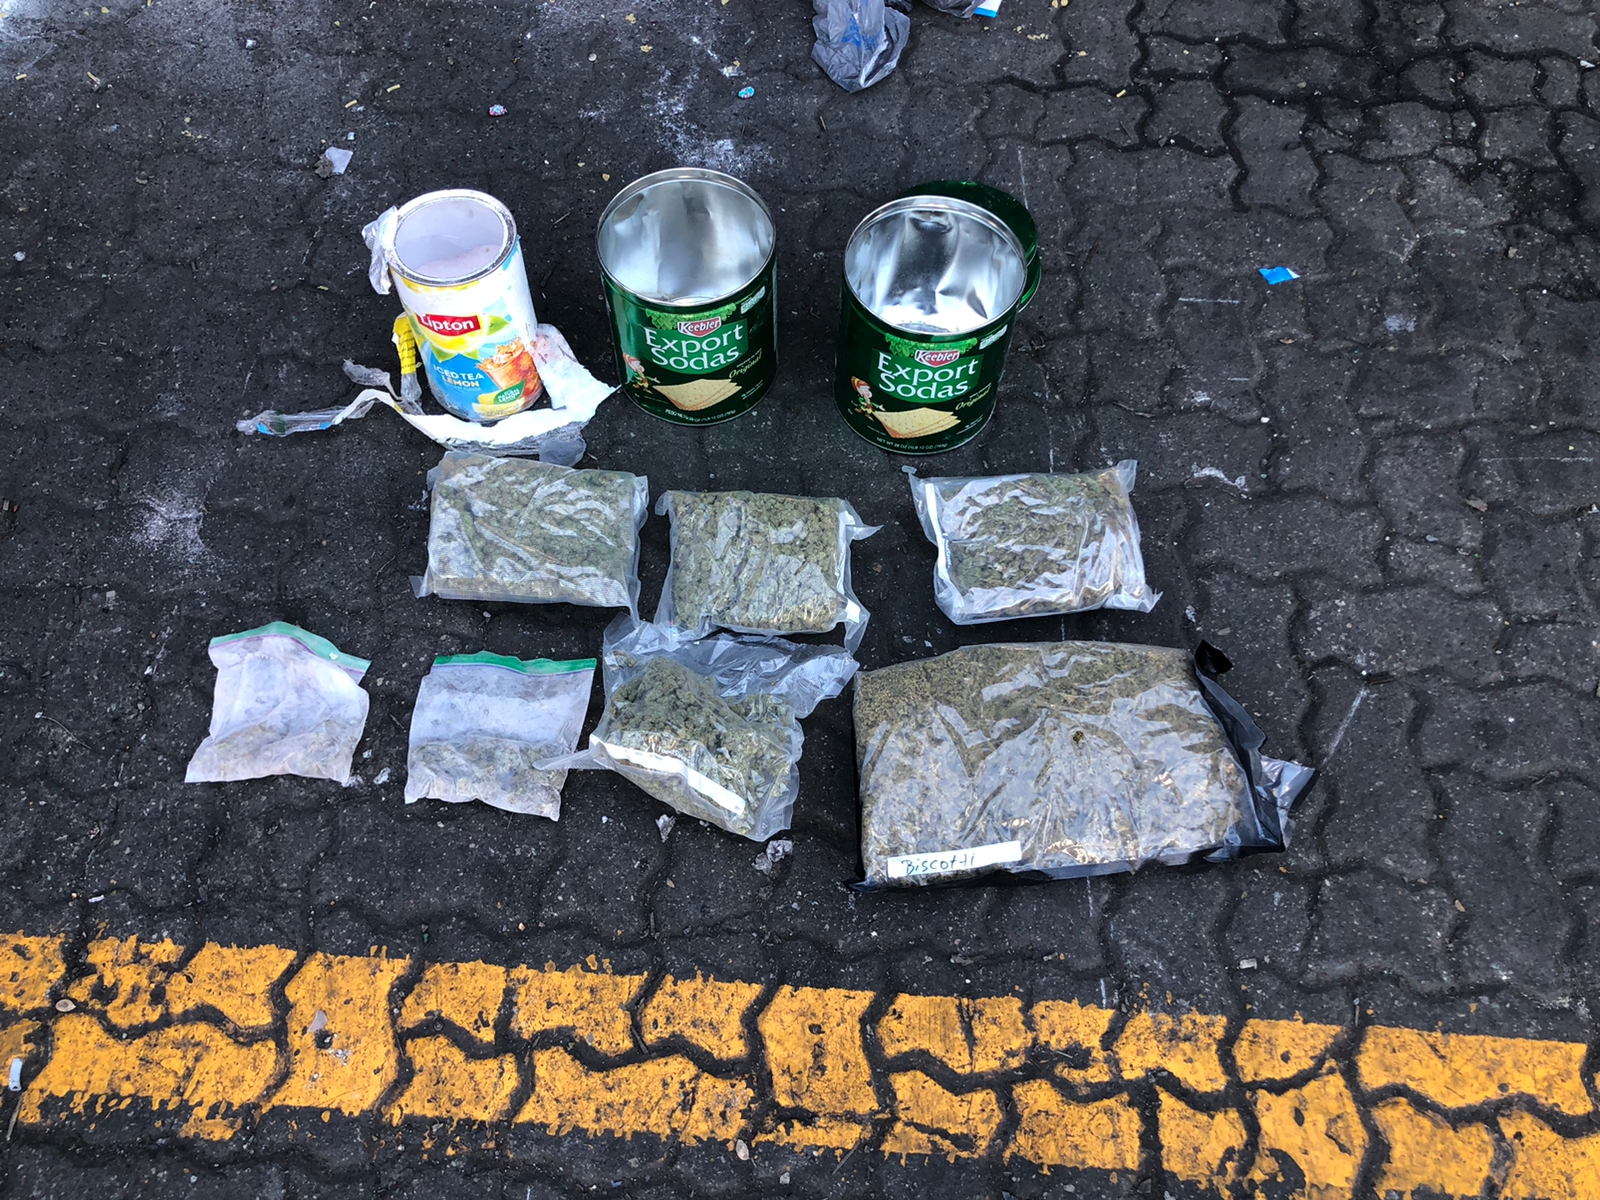 Ocupan paquetes de marihuana encontrados en latas de té y galletas